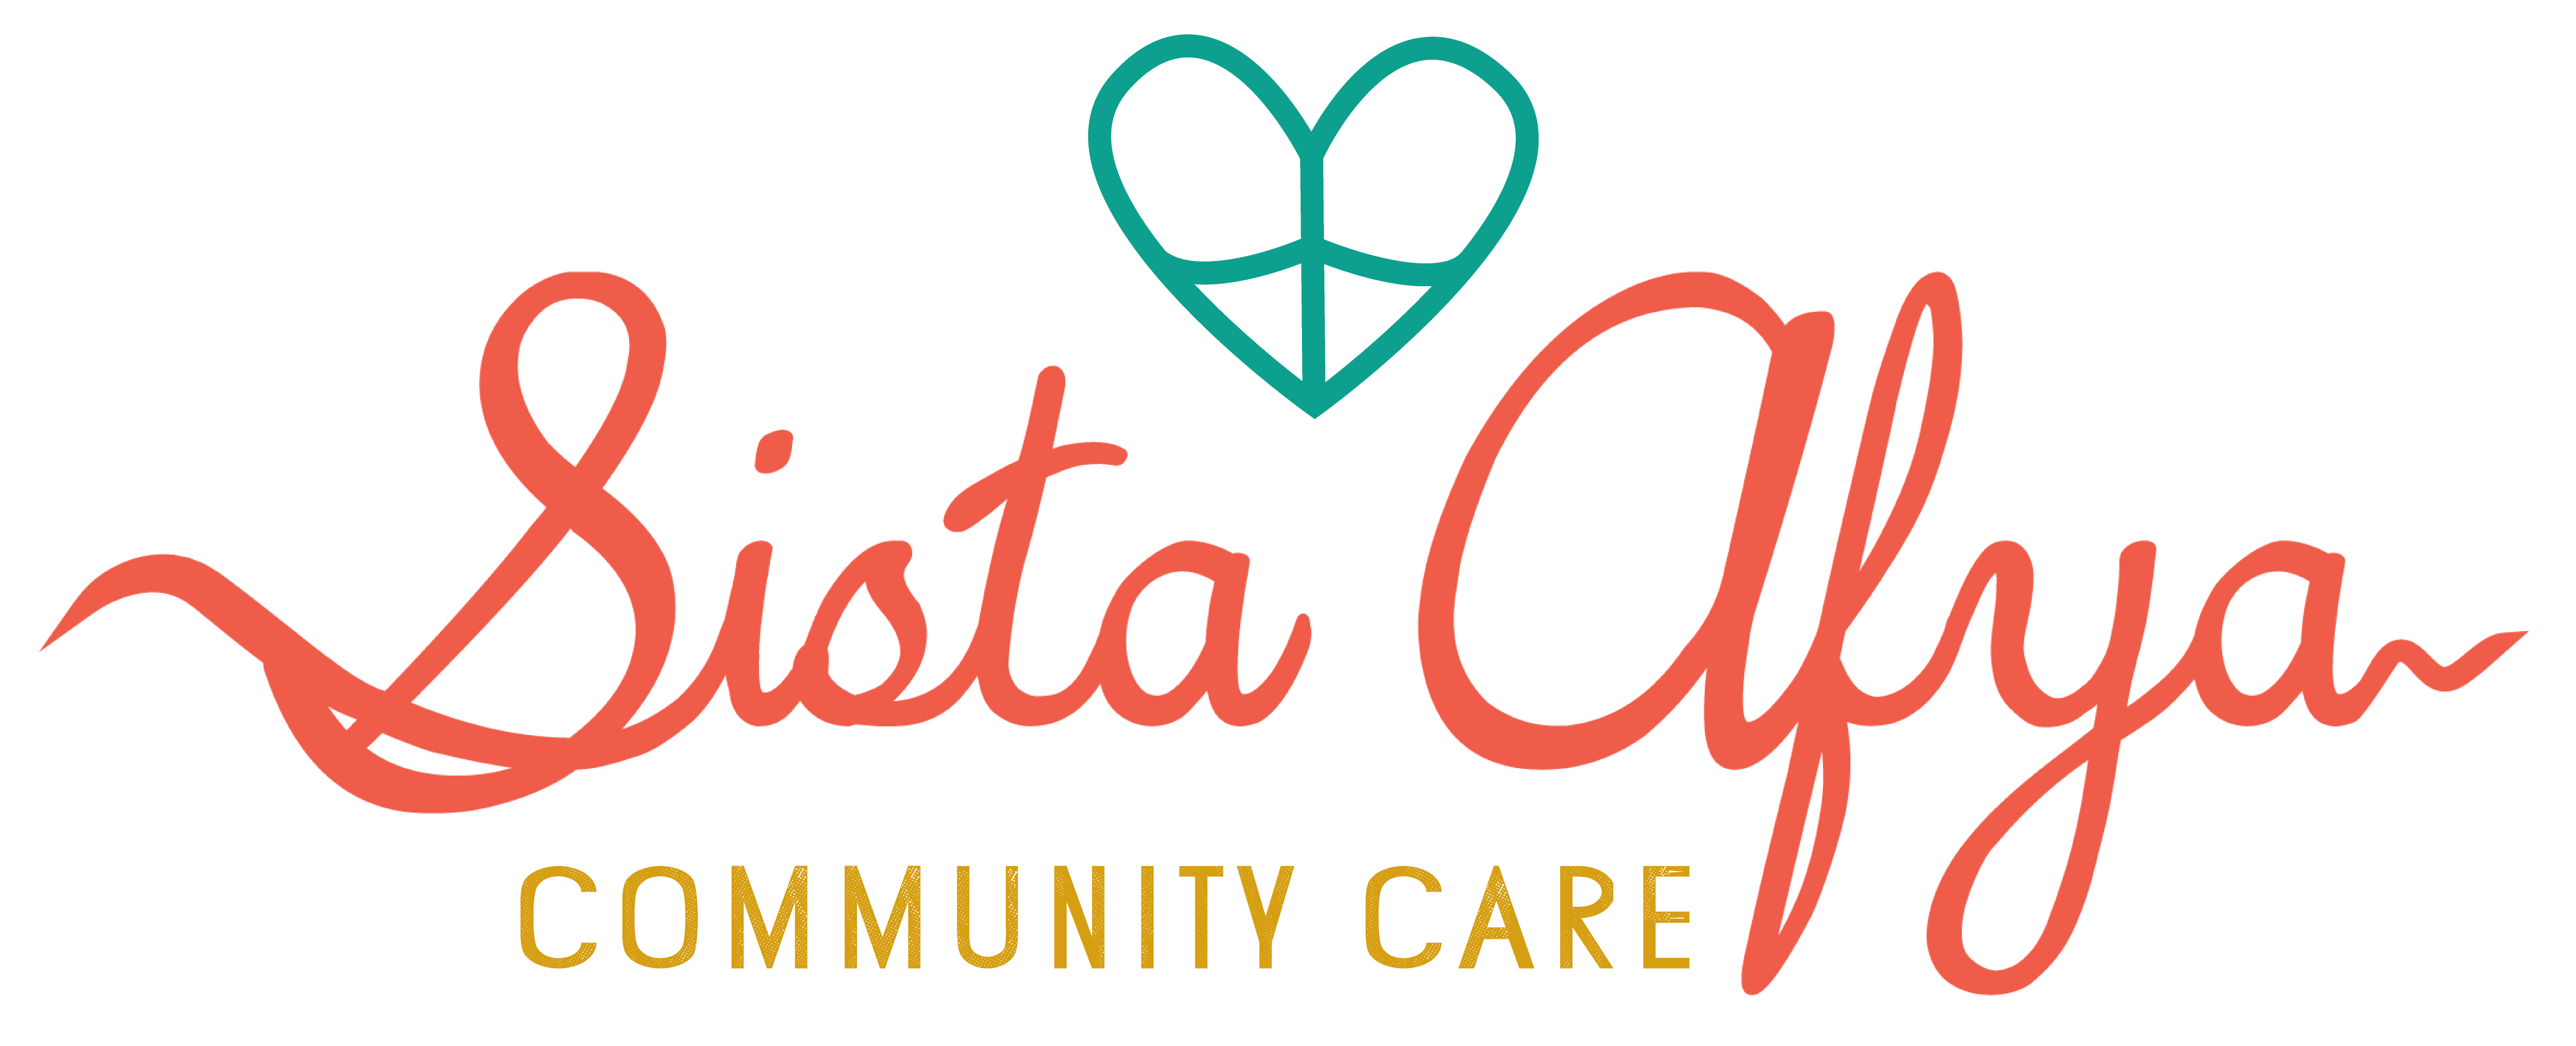 Sista Afya Community Care logo